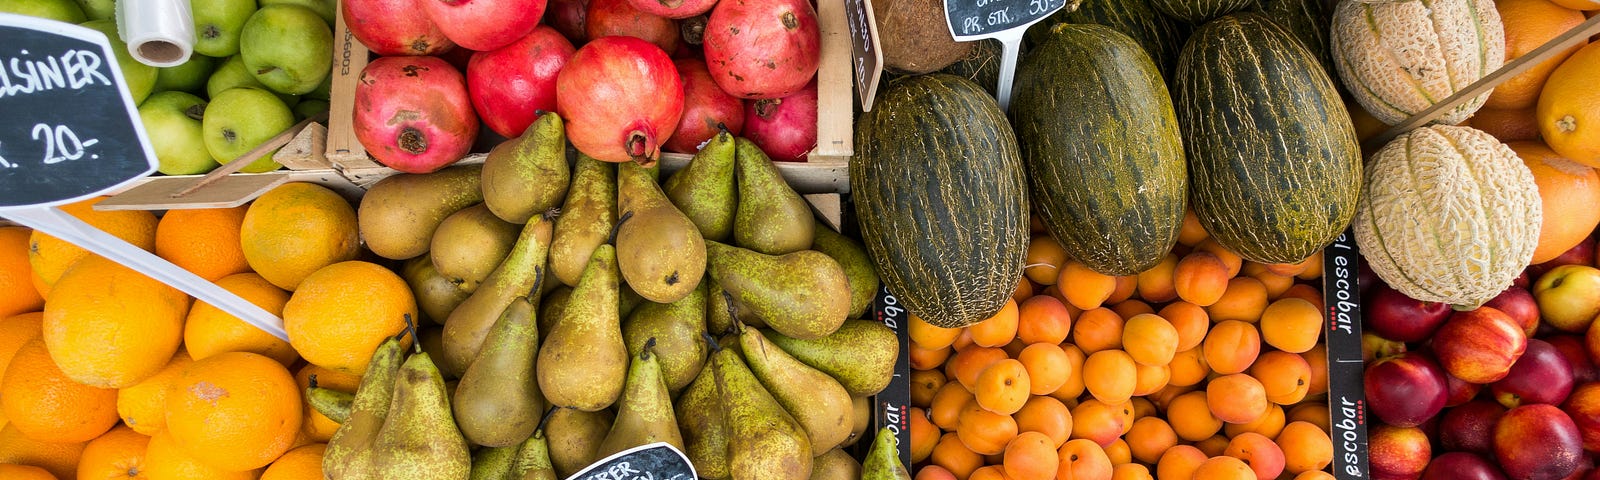 Photo of fresh fruit produce at markets.